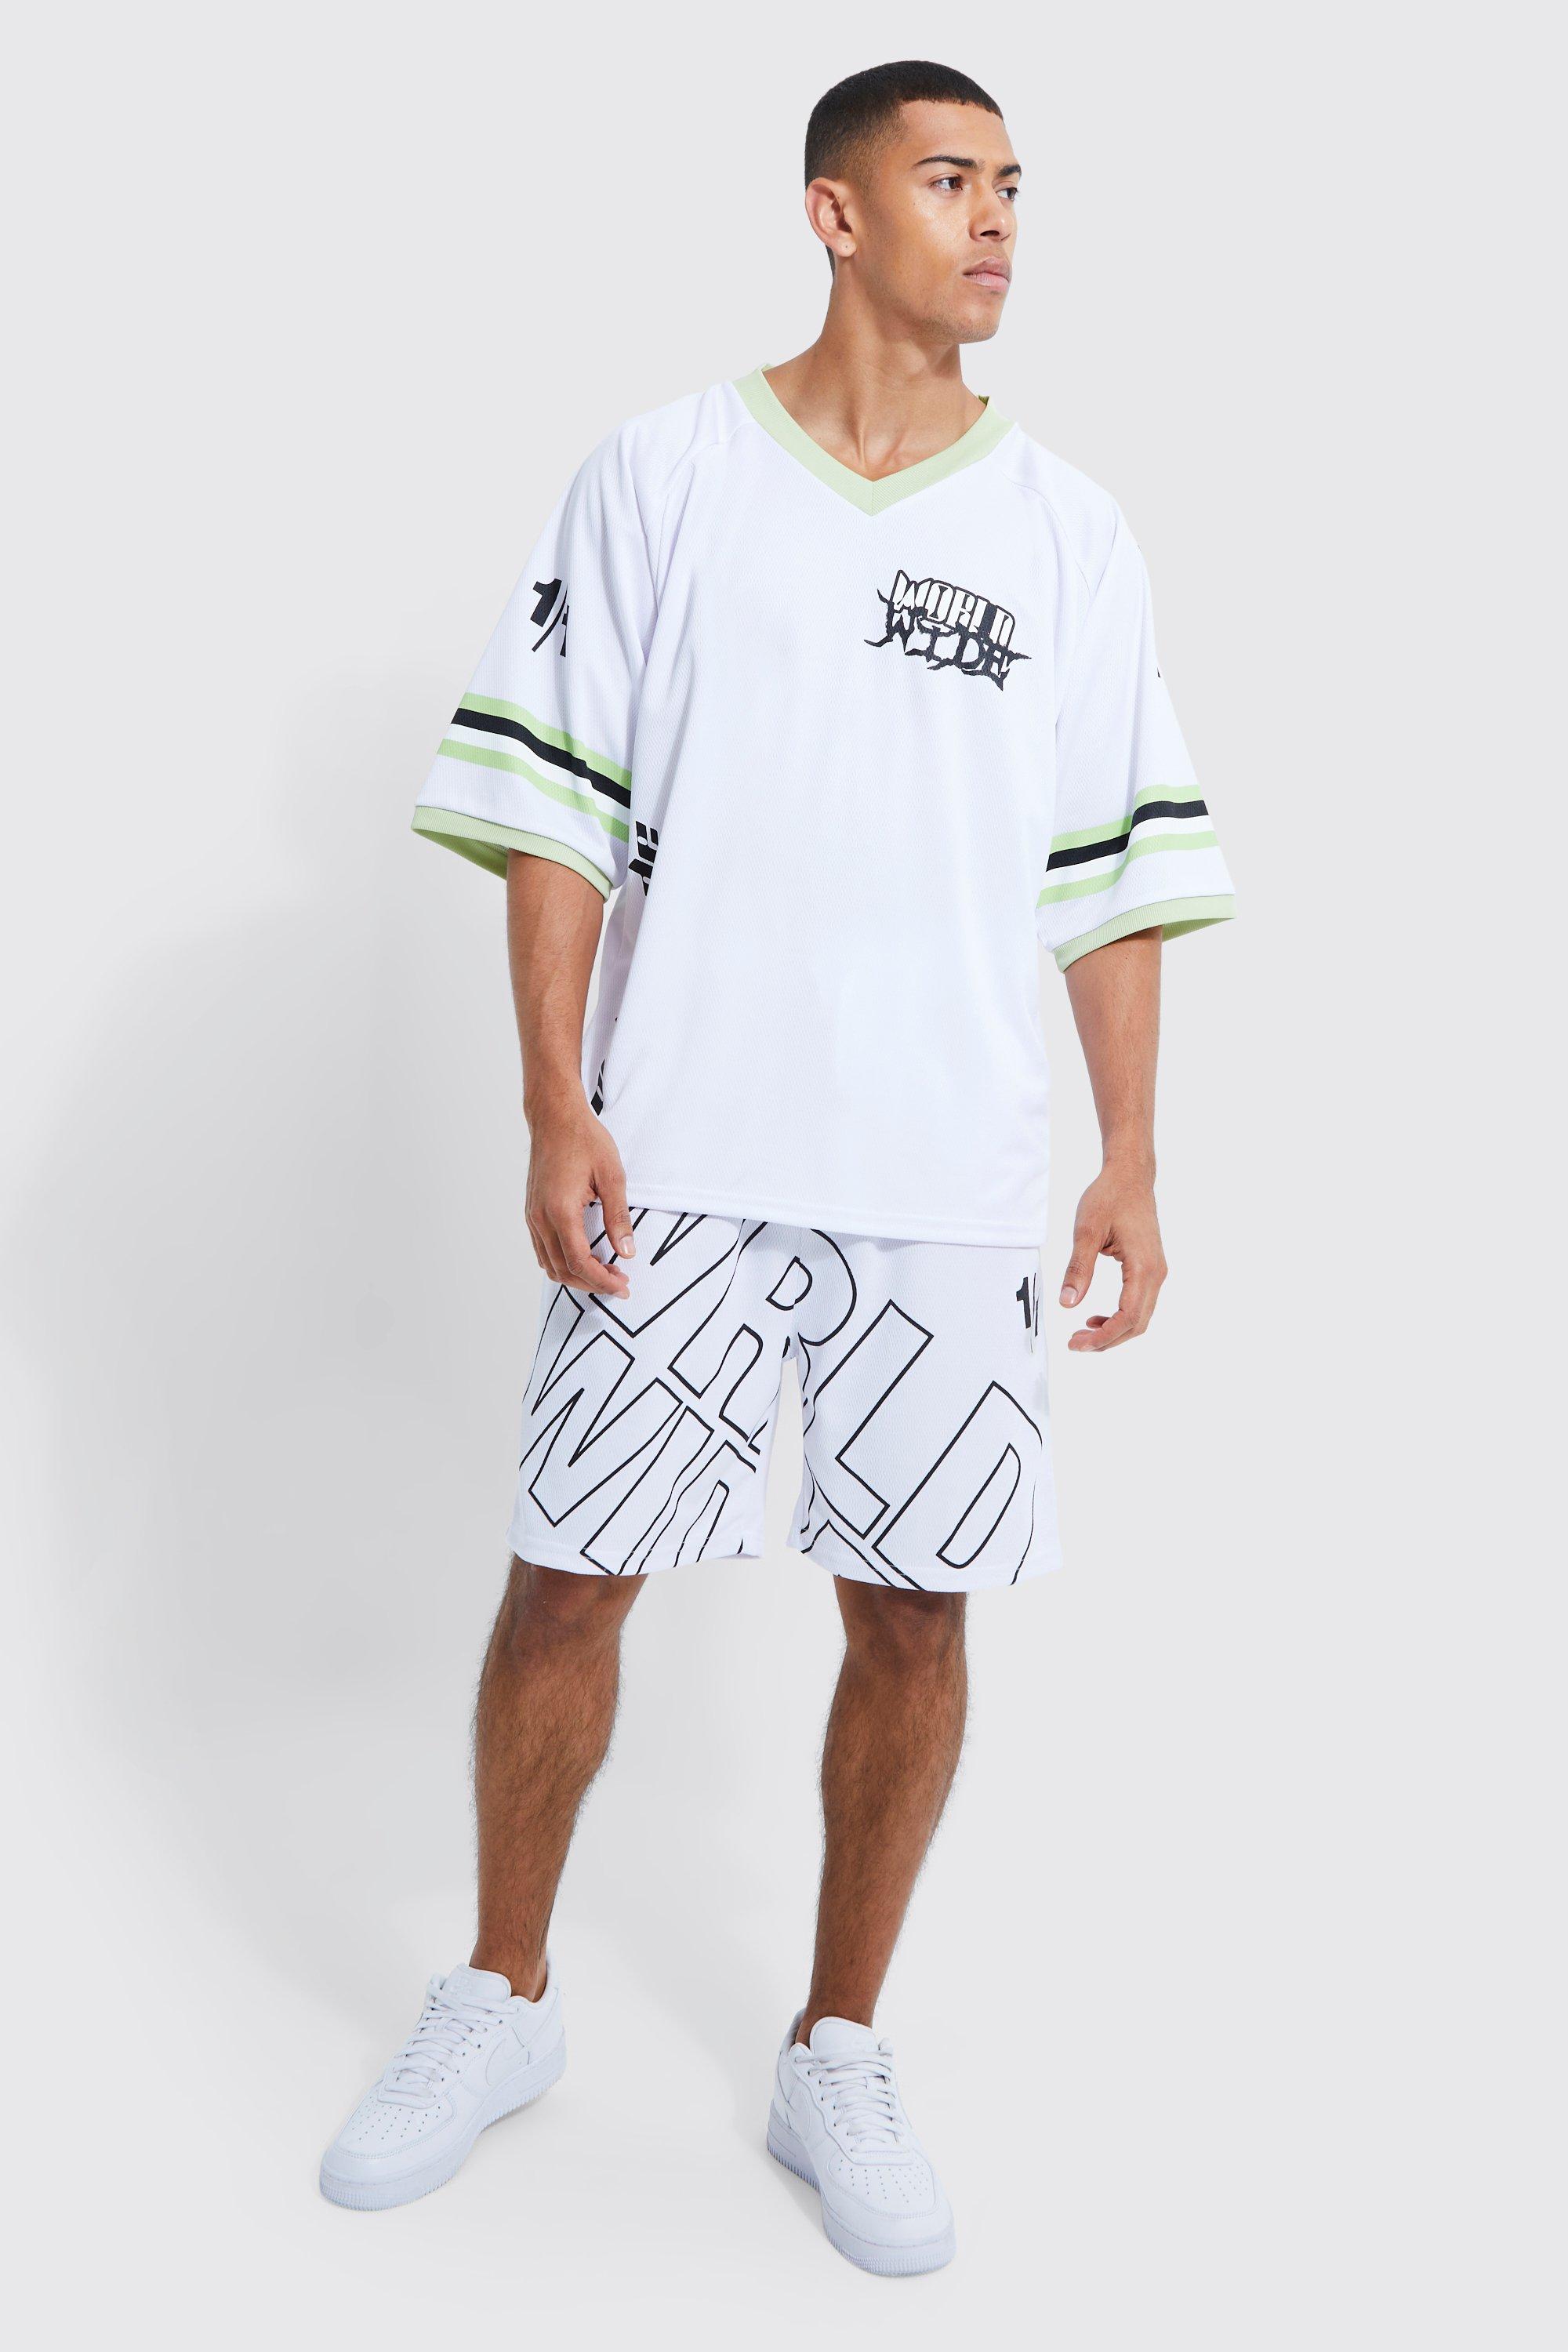 men's worldwide mesh v-neck football t-shirt and short set - white - s, white